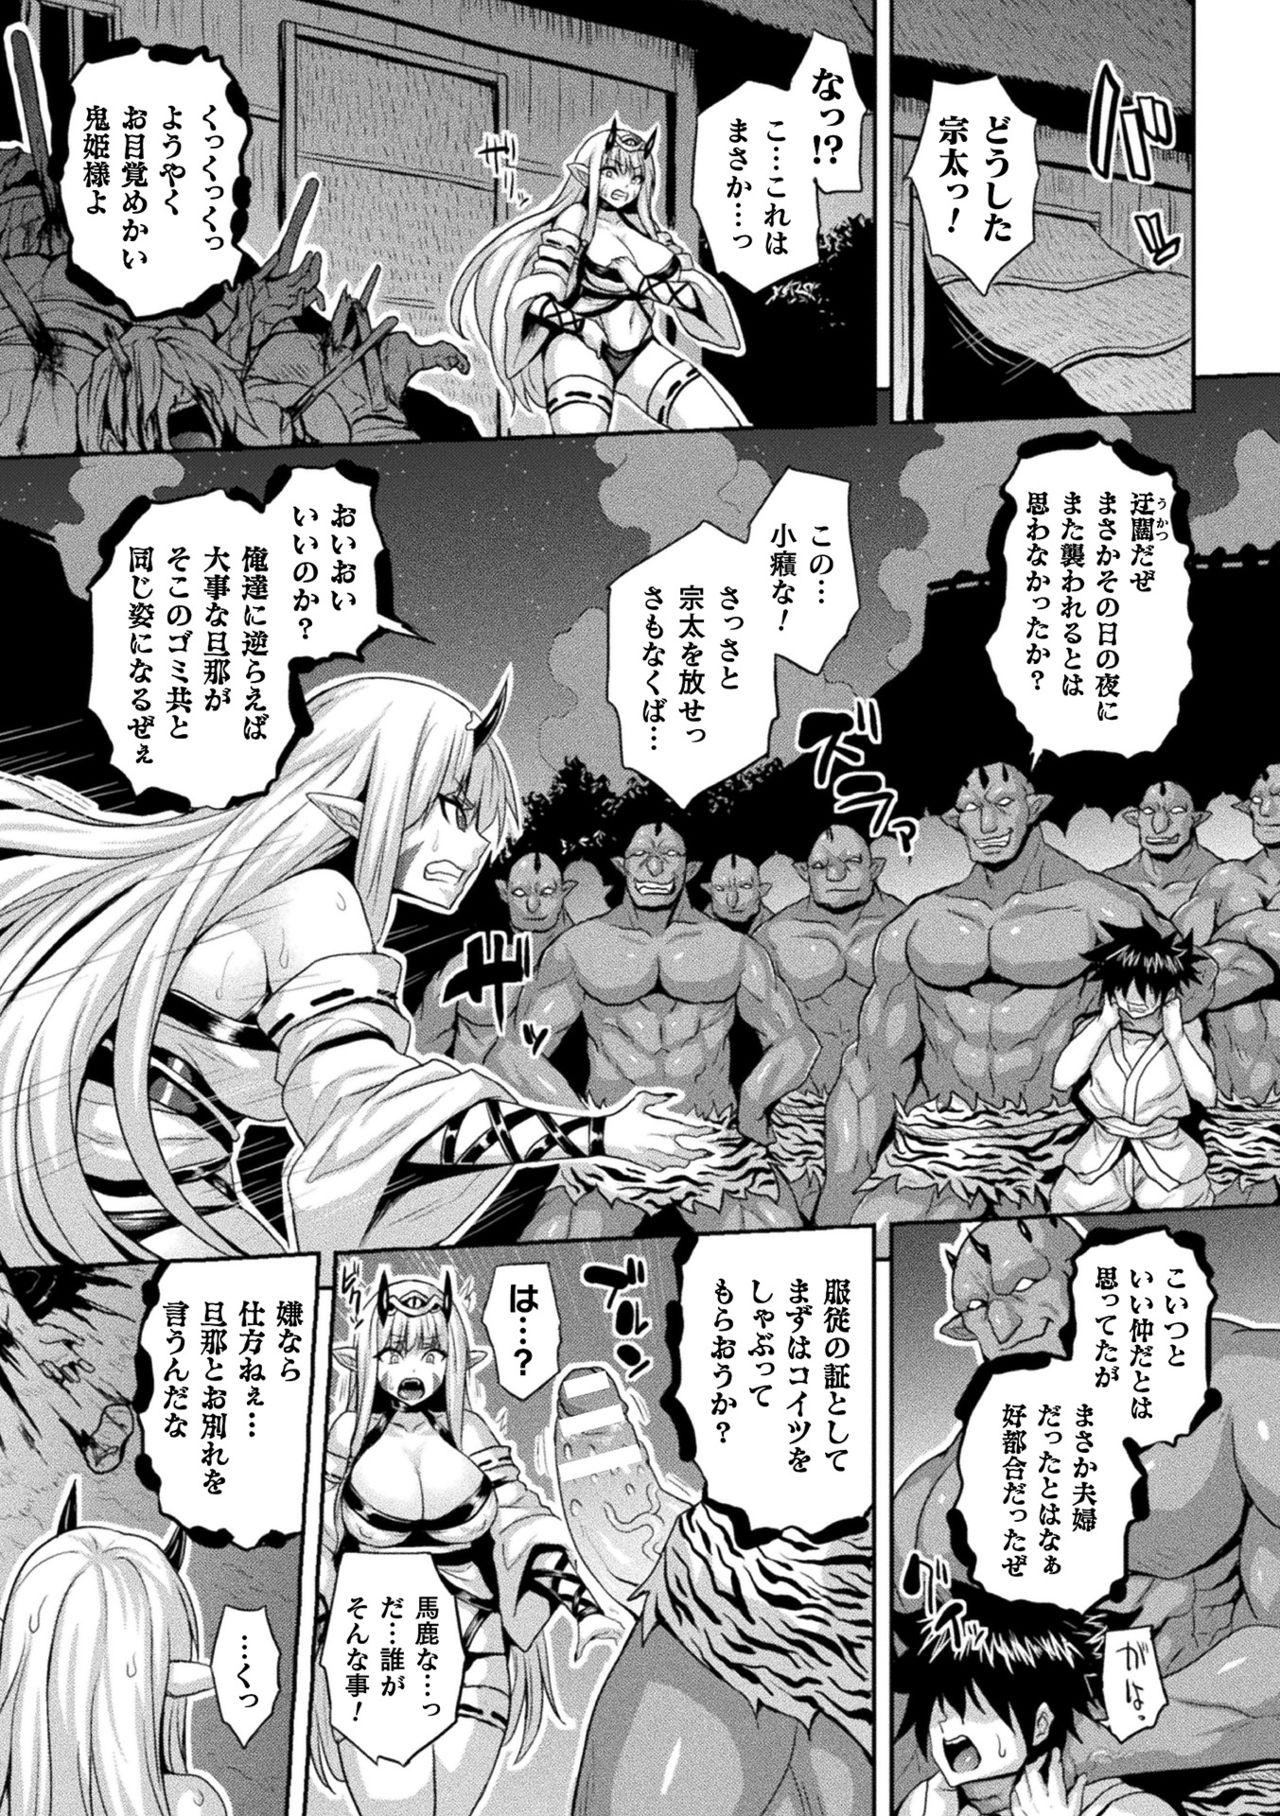 18 Year Old [Anthology] Bessatsu Comic Unreal Ishu NTR ~Ningen ni Koishita Jingai Heroine ga Douzoku Chinpo de Kairaku Ochi~ Vol. 2 [Digital] Sperm - Page 9